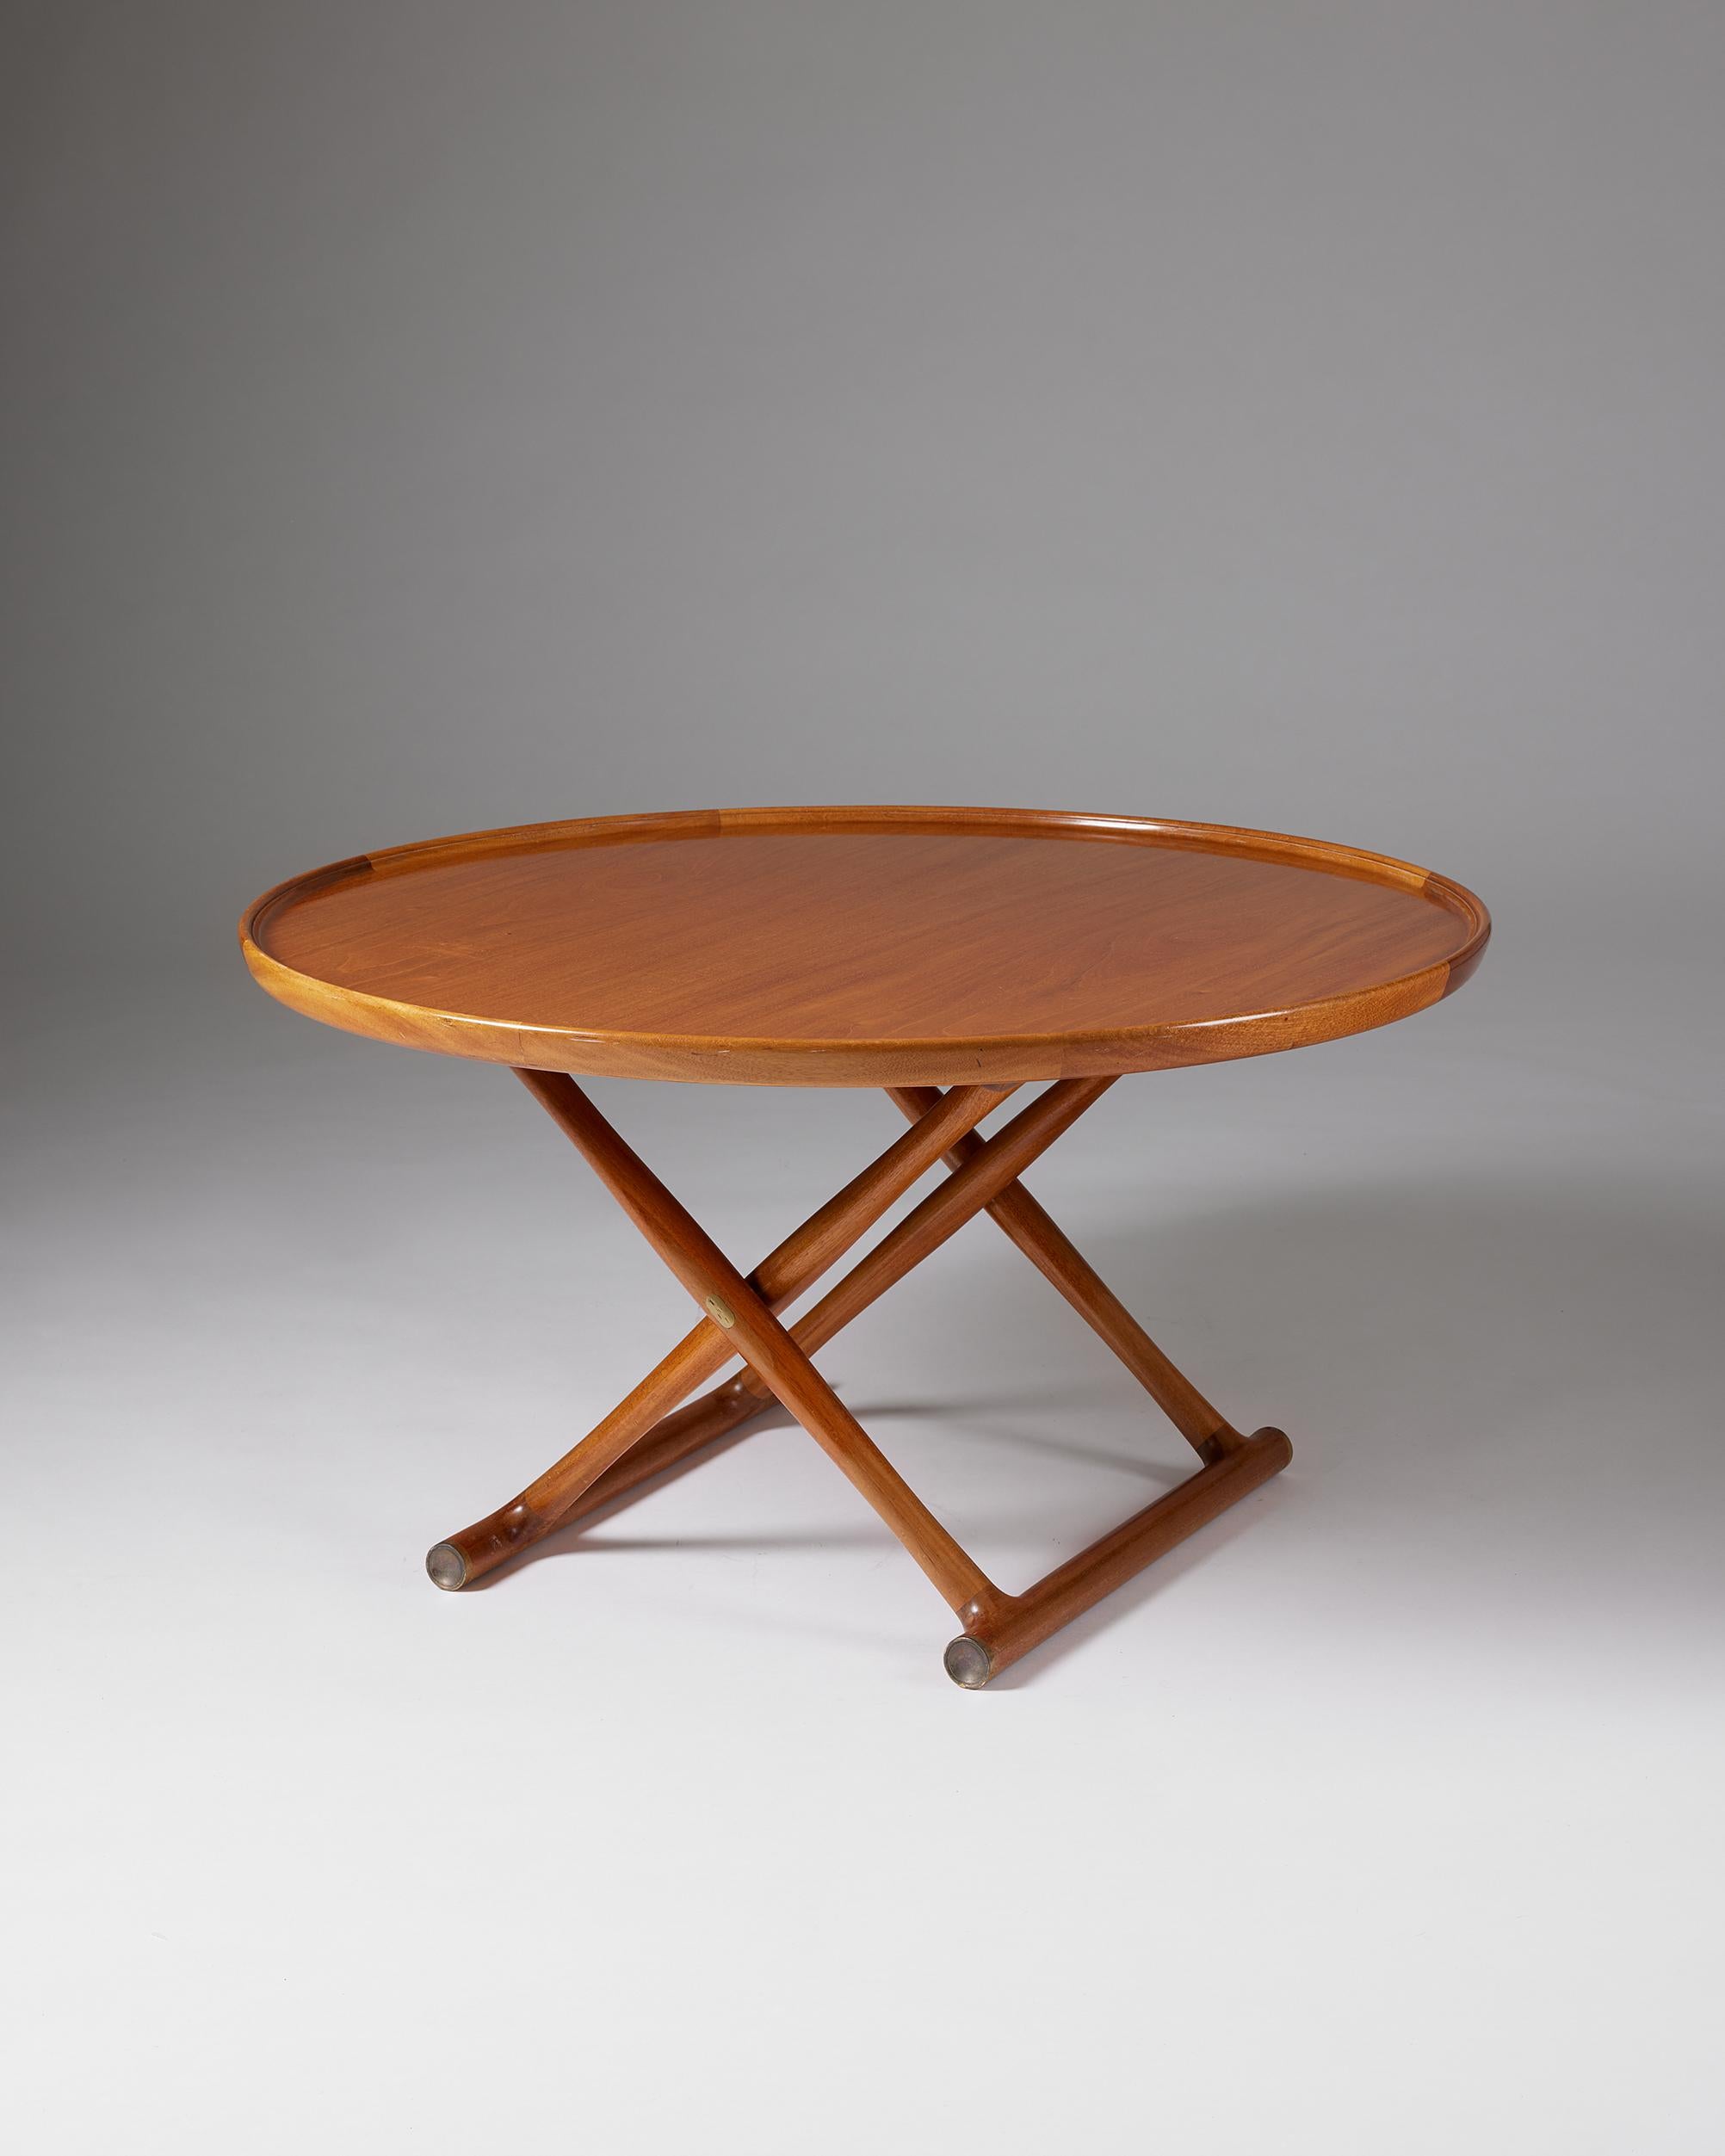 Beistelltisch 'The Egyptian Table', entworfen von Mogens Lassen für A.J. Iversen,
Dänemark, 1960er Jahre.

Mahagoni, klappbarer Rahmen und Platte mit erhöhtem Rand, Messingbeschläge.

Mit diesem Beistelltischmodell schuf Mogens Lassen eine Ikone des